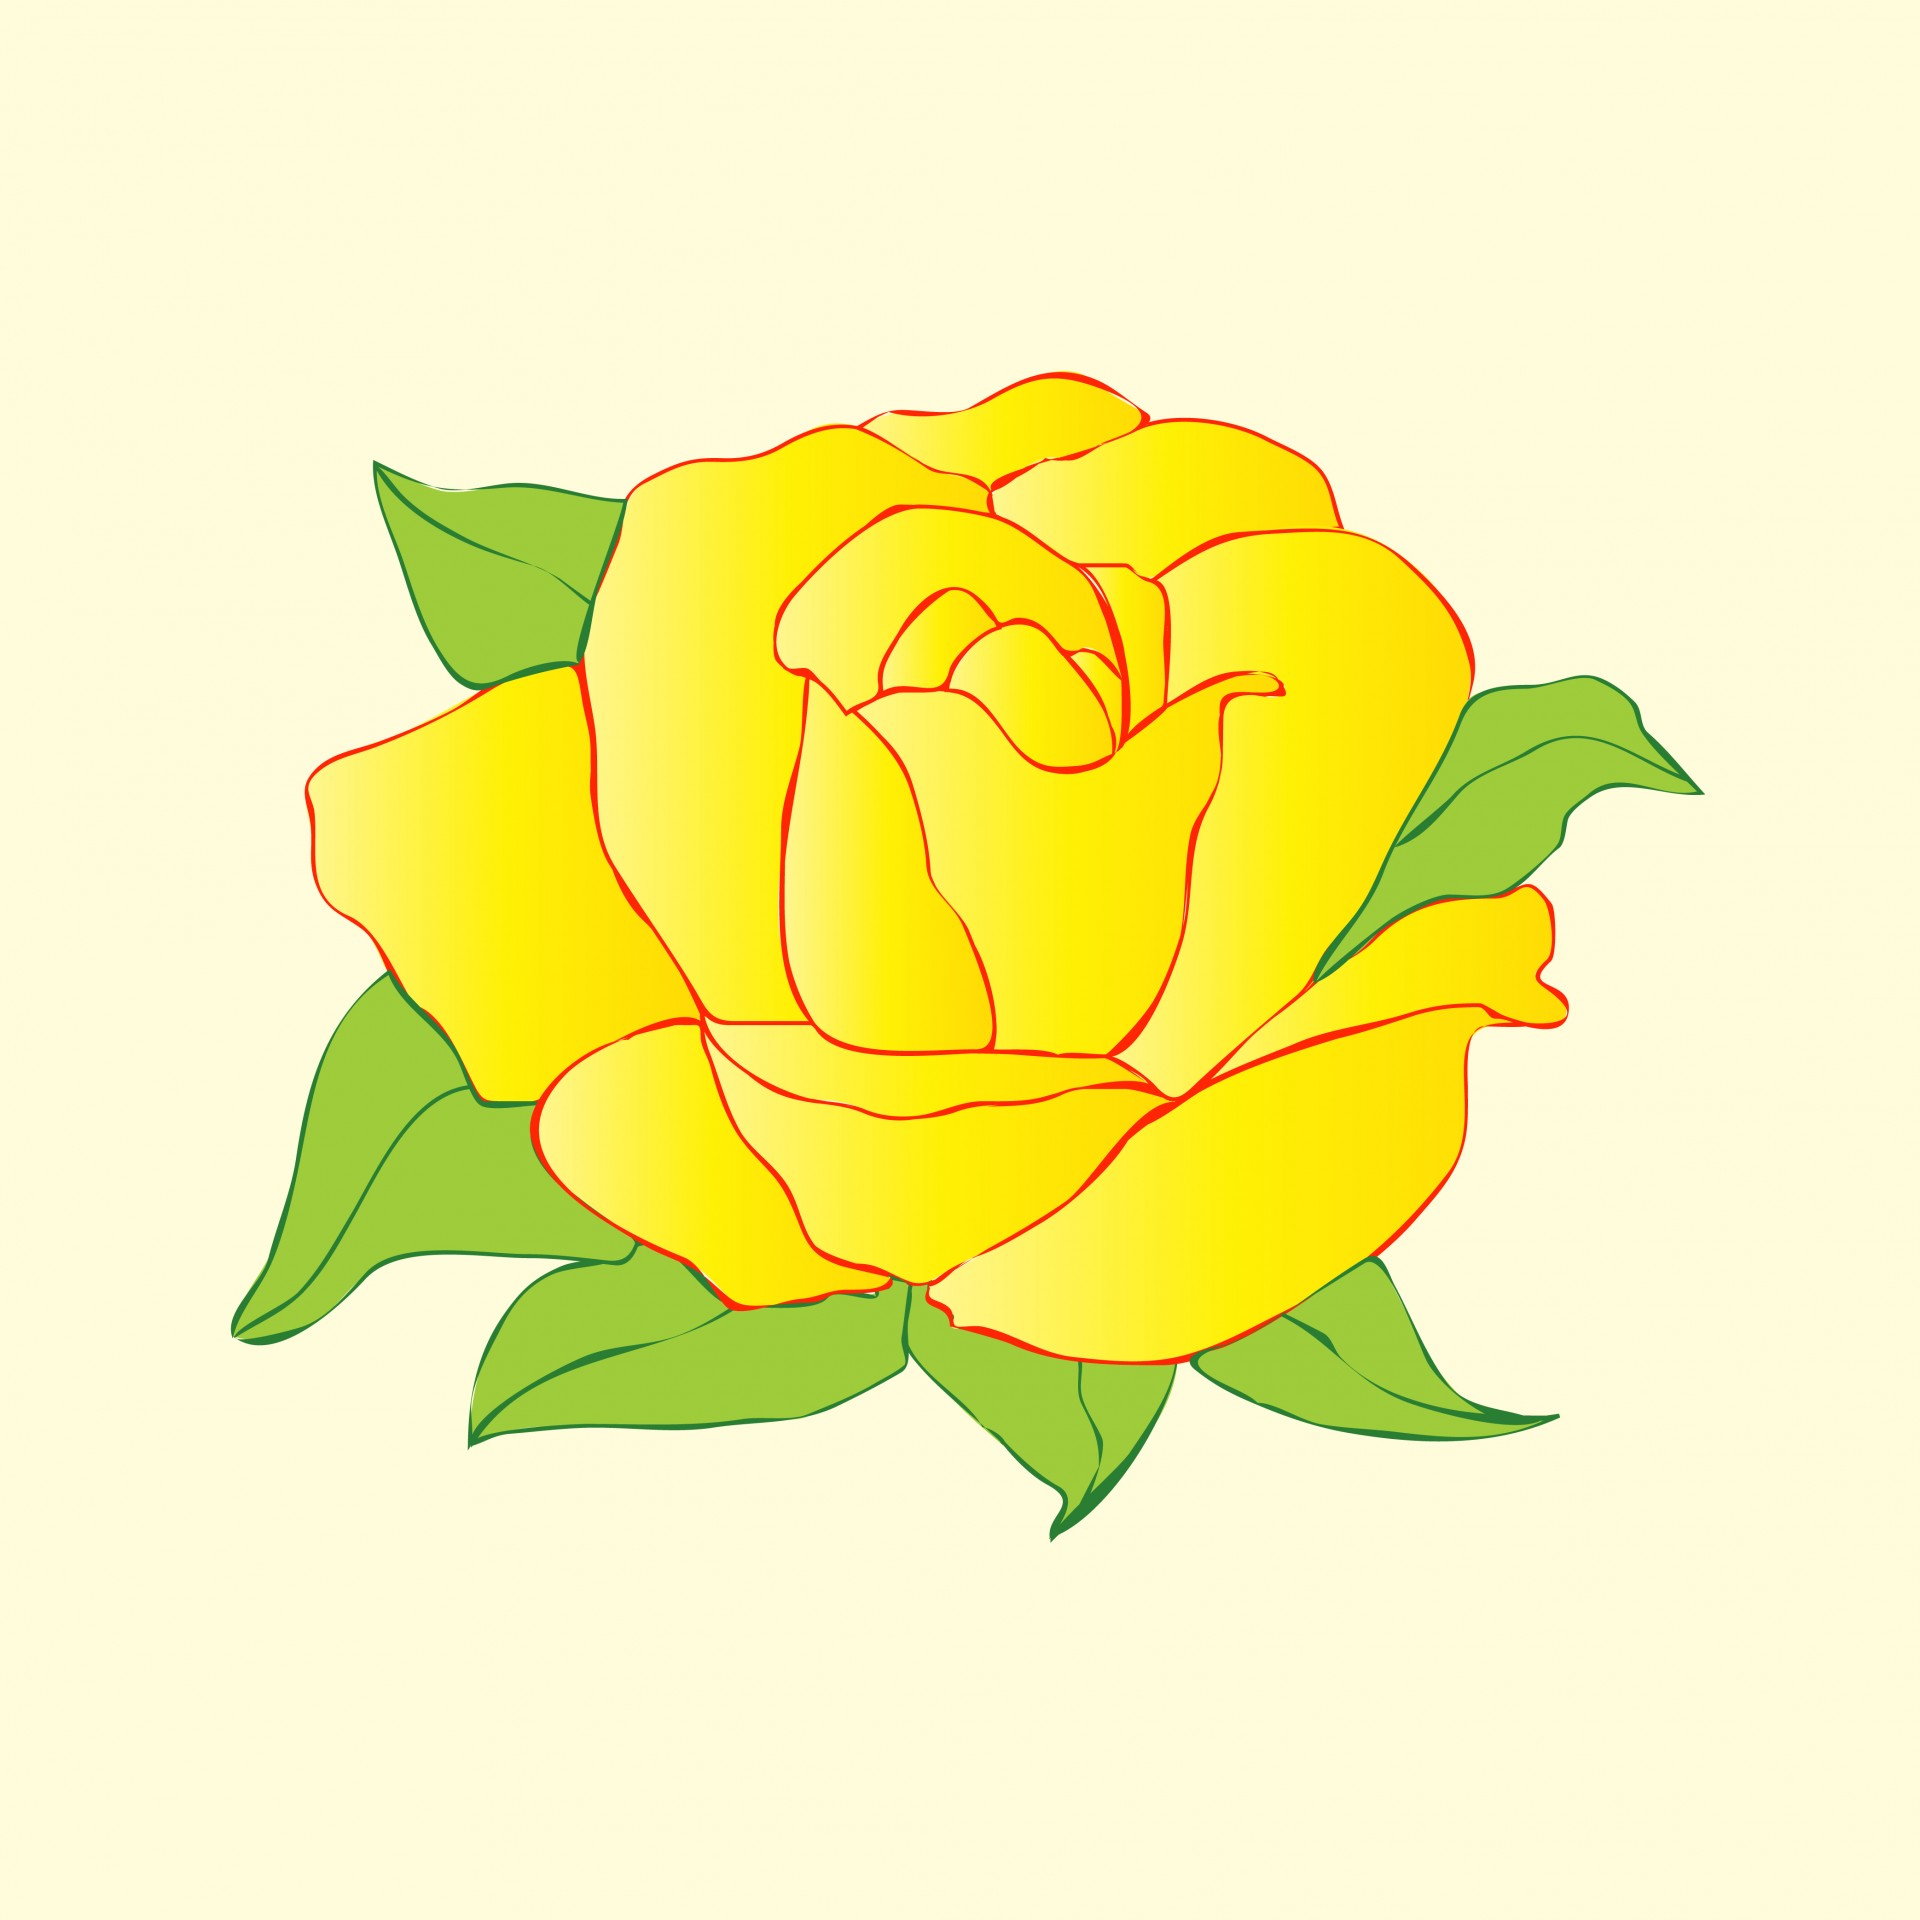 Желтый цветок розы